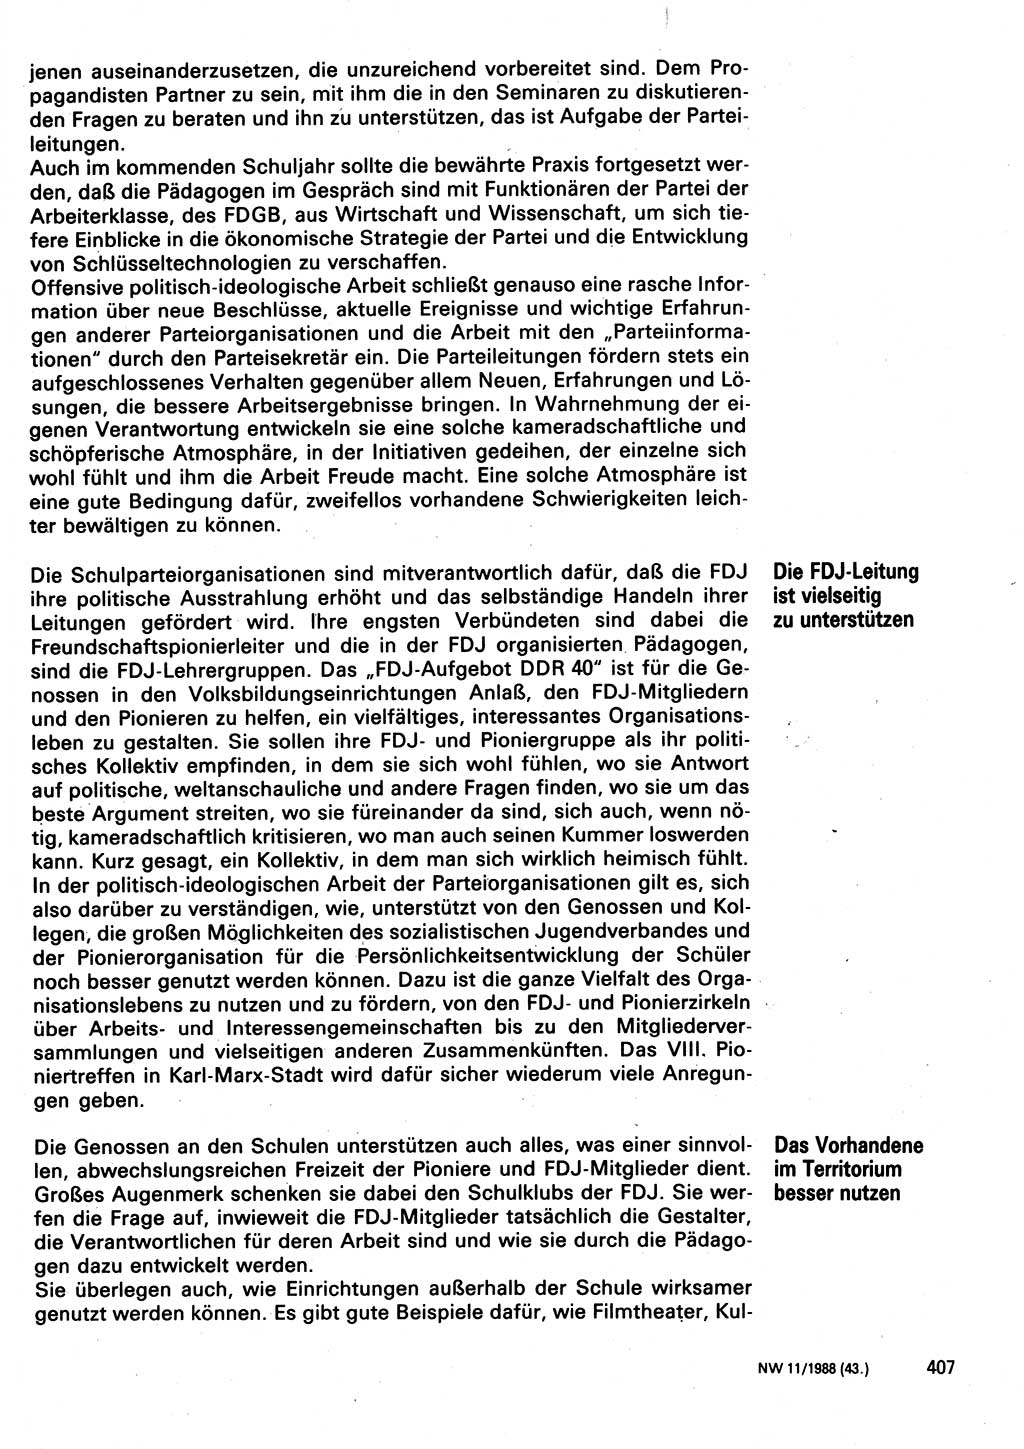 Neuer Weg (NW), Organ des Zentralkomitees (ZK) der SED (Sozialistische Einheitspartei Deutschlands) für Fragen des Parteilebens, 43. Jahrgang [Deutsche Demokratische Republik (DDR)] 1988, Seite 407 (NW ZK SED DDR 1988, S. 407)